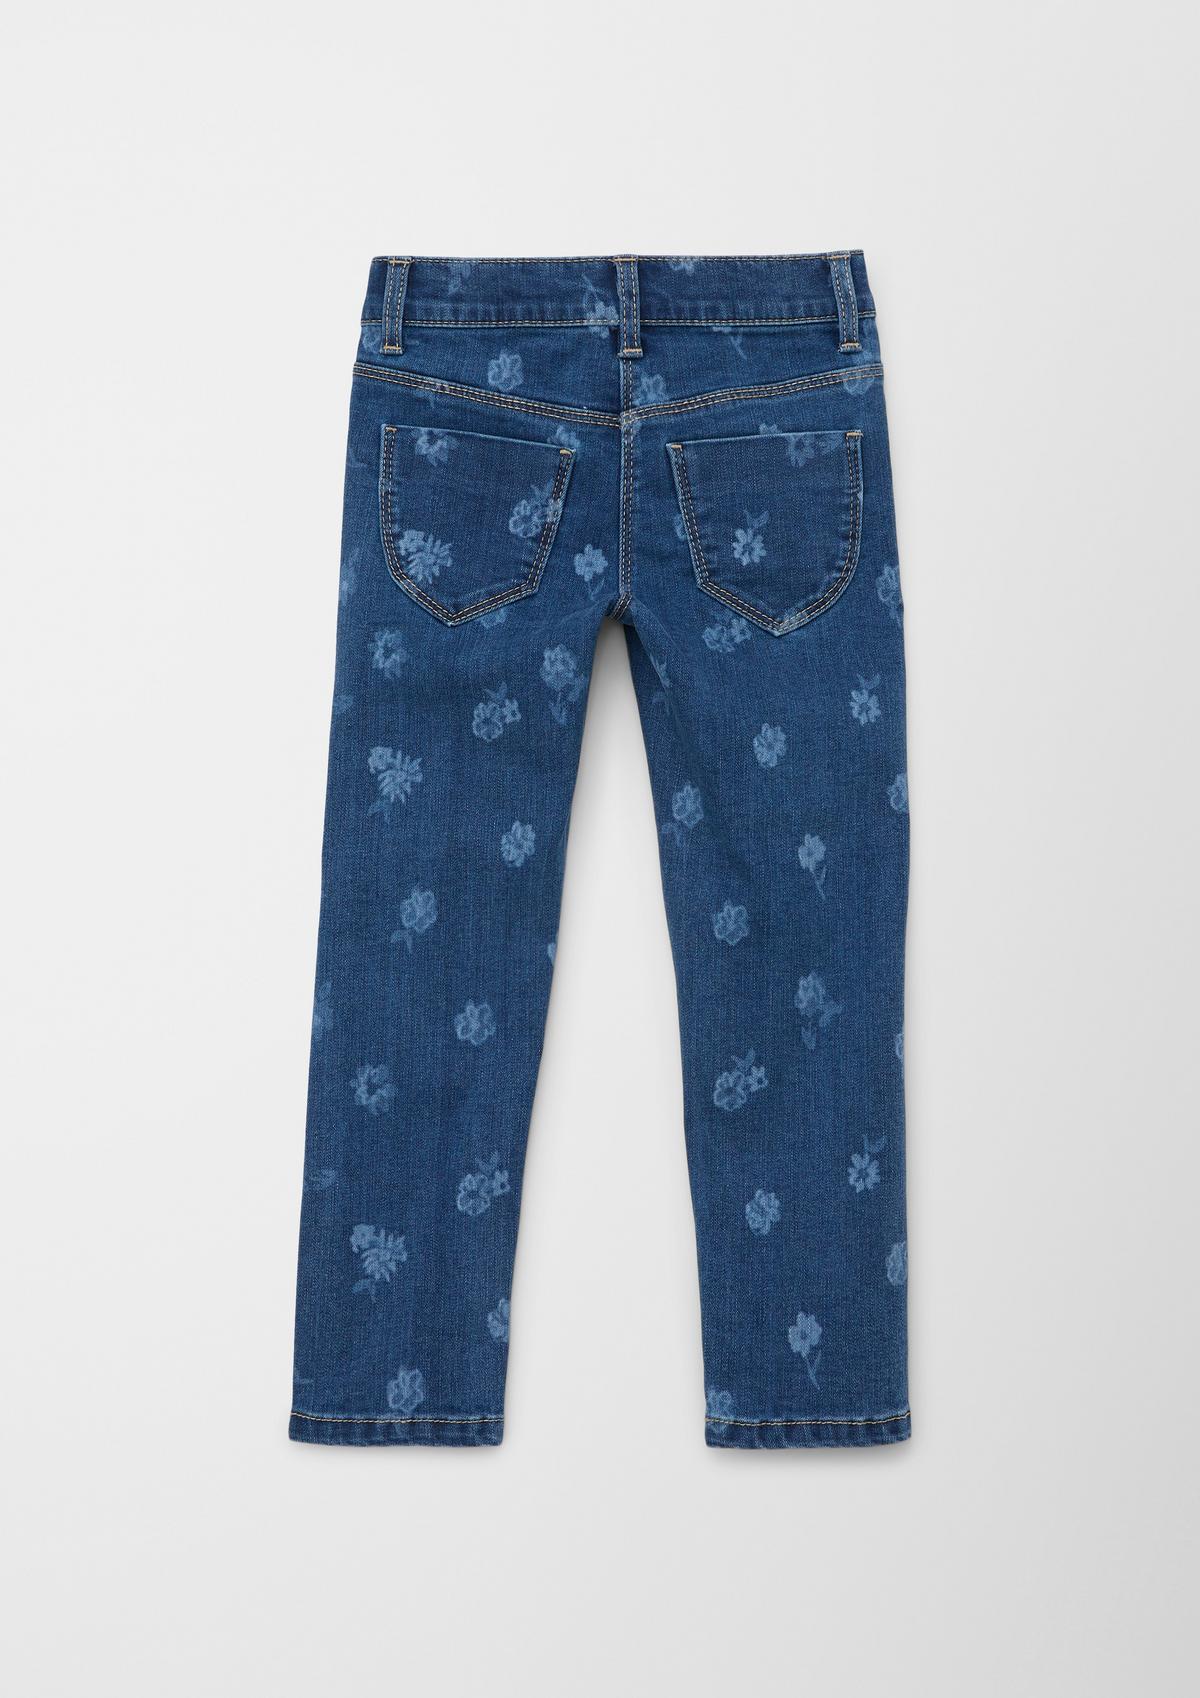 s.Oliver Regular: jeans hlače s potiskom po celotni površini